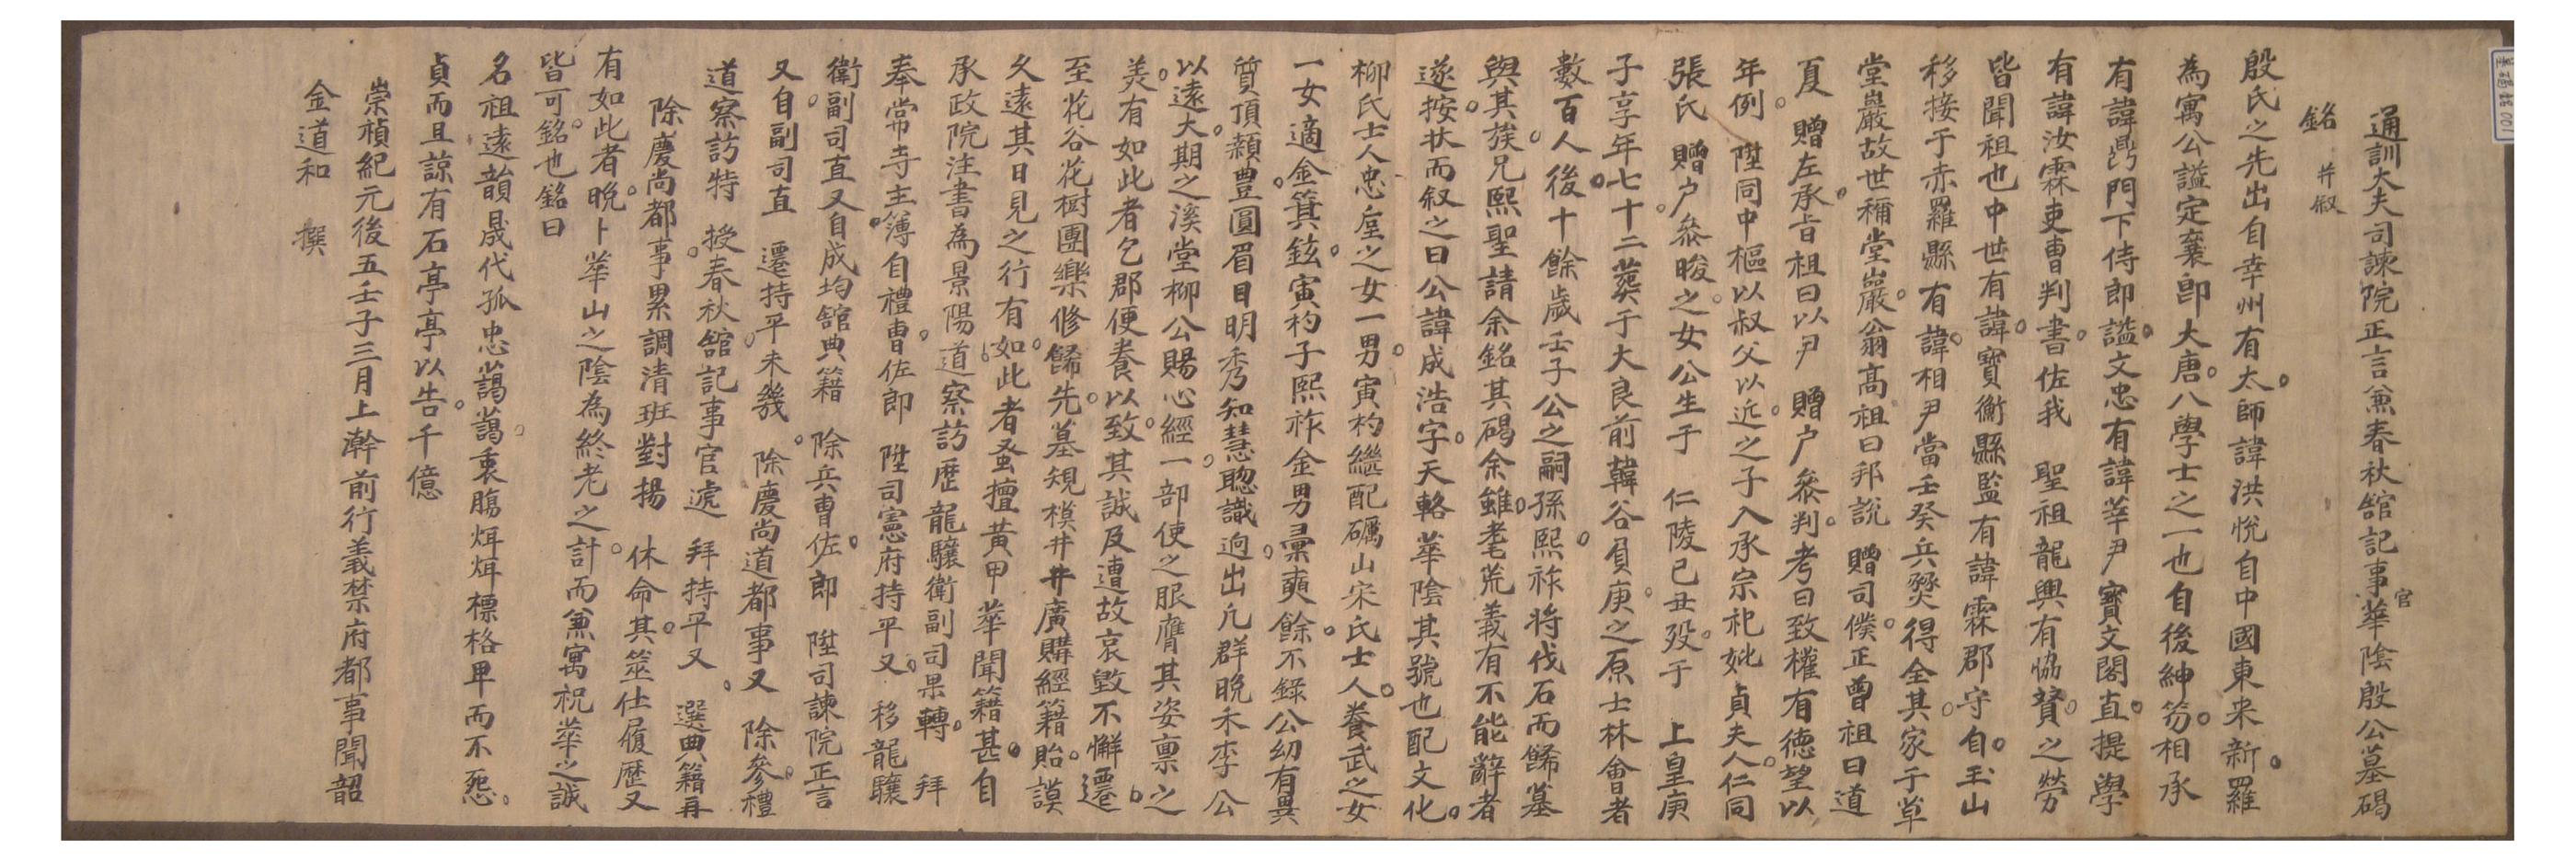 1912년 탁암 김도화가 지은 화음 은성호의 묘갈명